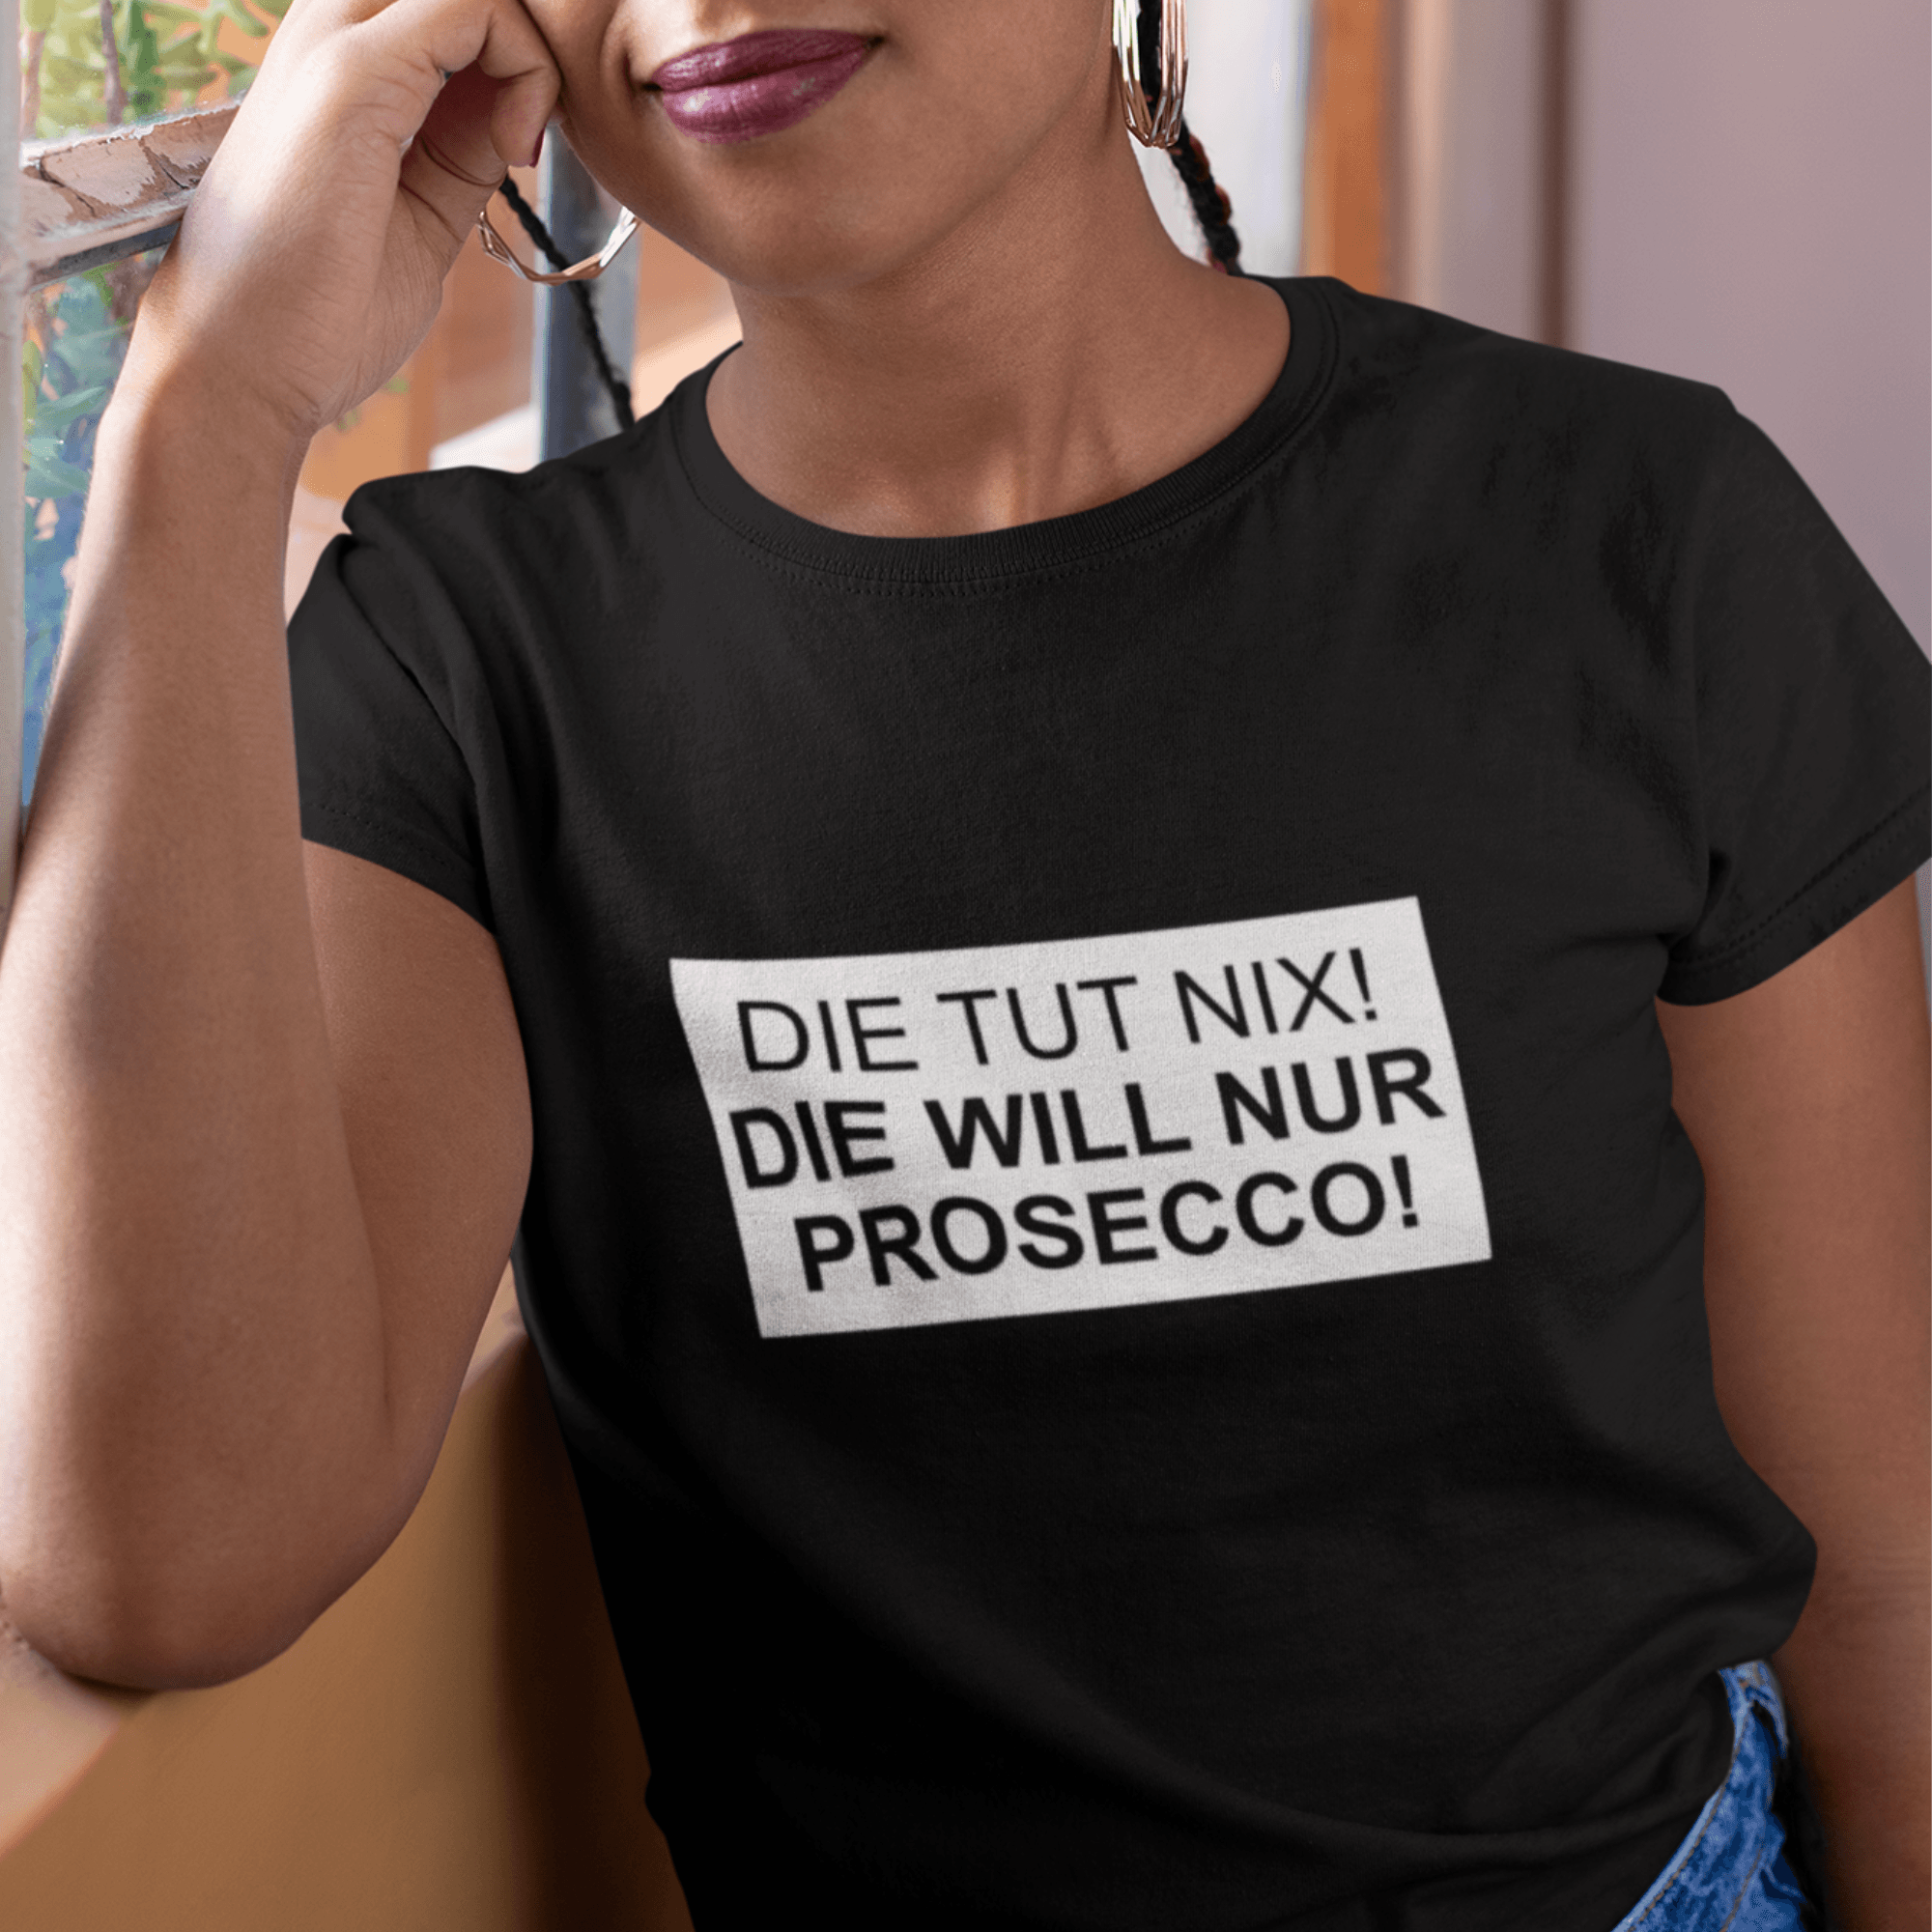 DIE TUT NIX! PROSECCO - Damen Premiumshirt - einschenken24.de